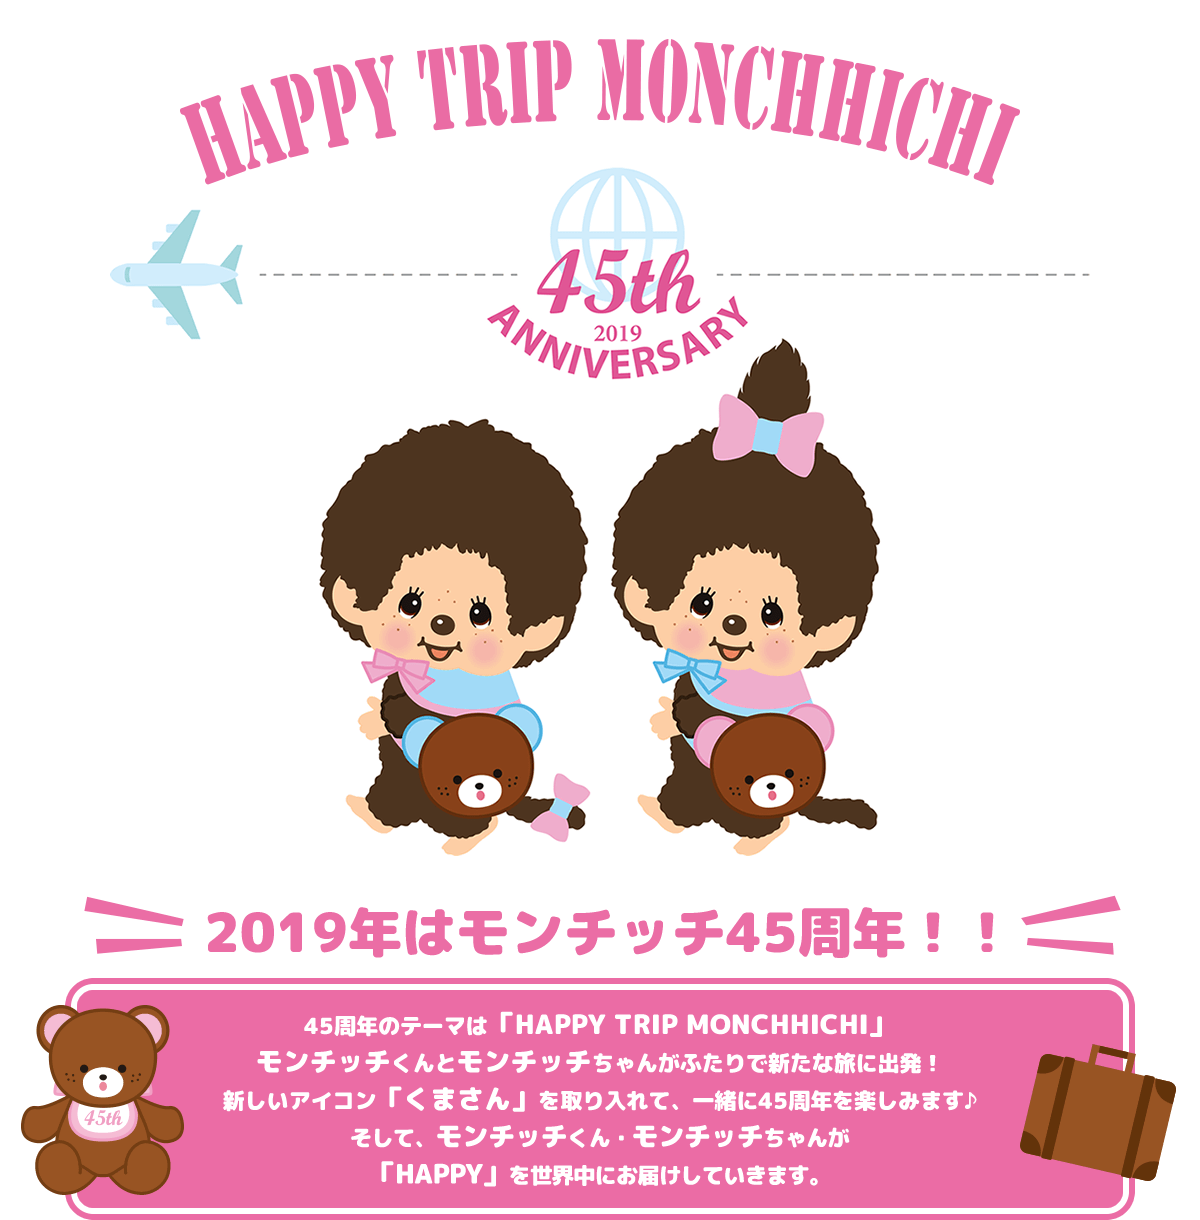 2019年はモンチッチ45周年！！45周年のテーマは「HAPPY TRIP MONCHHICHI」。モンチッチくんとモンチッチちゃんがふたりで新たな旅に出発！ 新しいアイコン「くまさん」を取り入れて、一緒に45周年を楽しみます♪ そして、モンチッチくん・モンチッチちゃんが「HAPPY」を世界中にお届けしていきます。